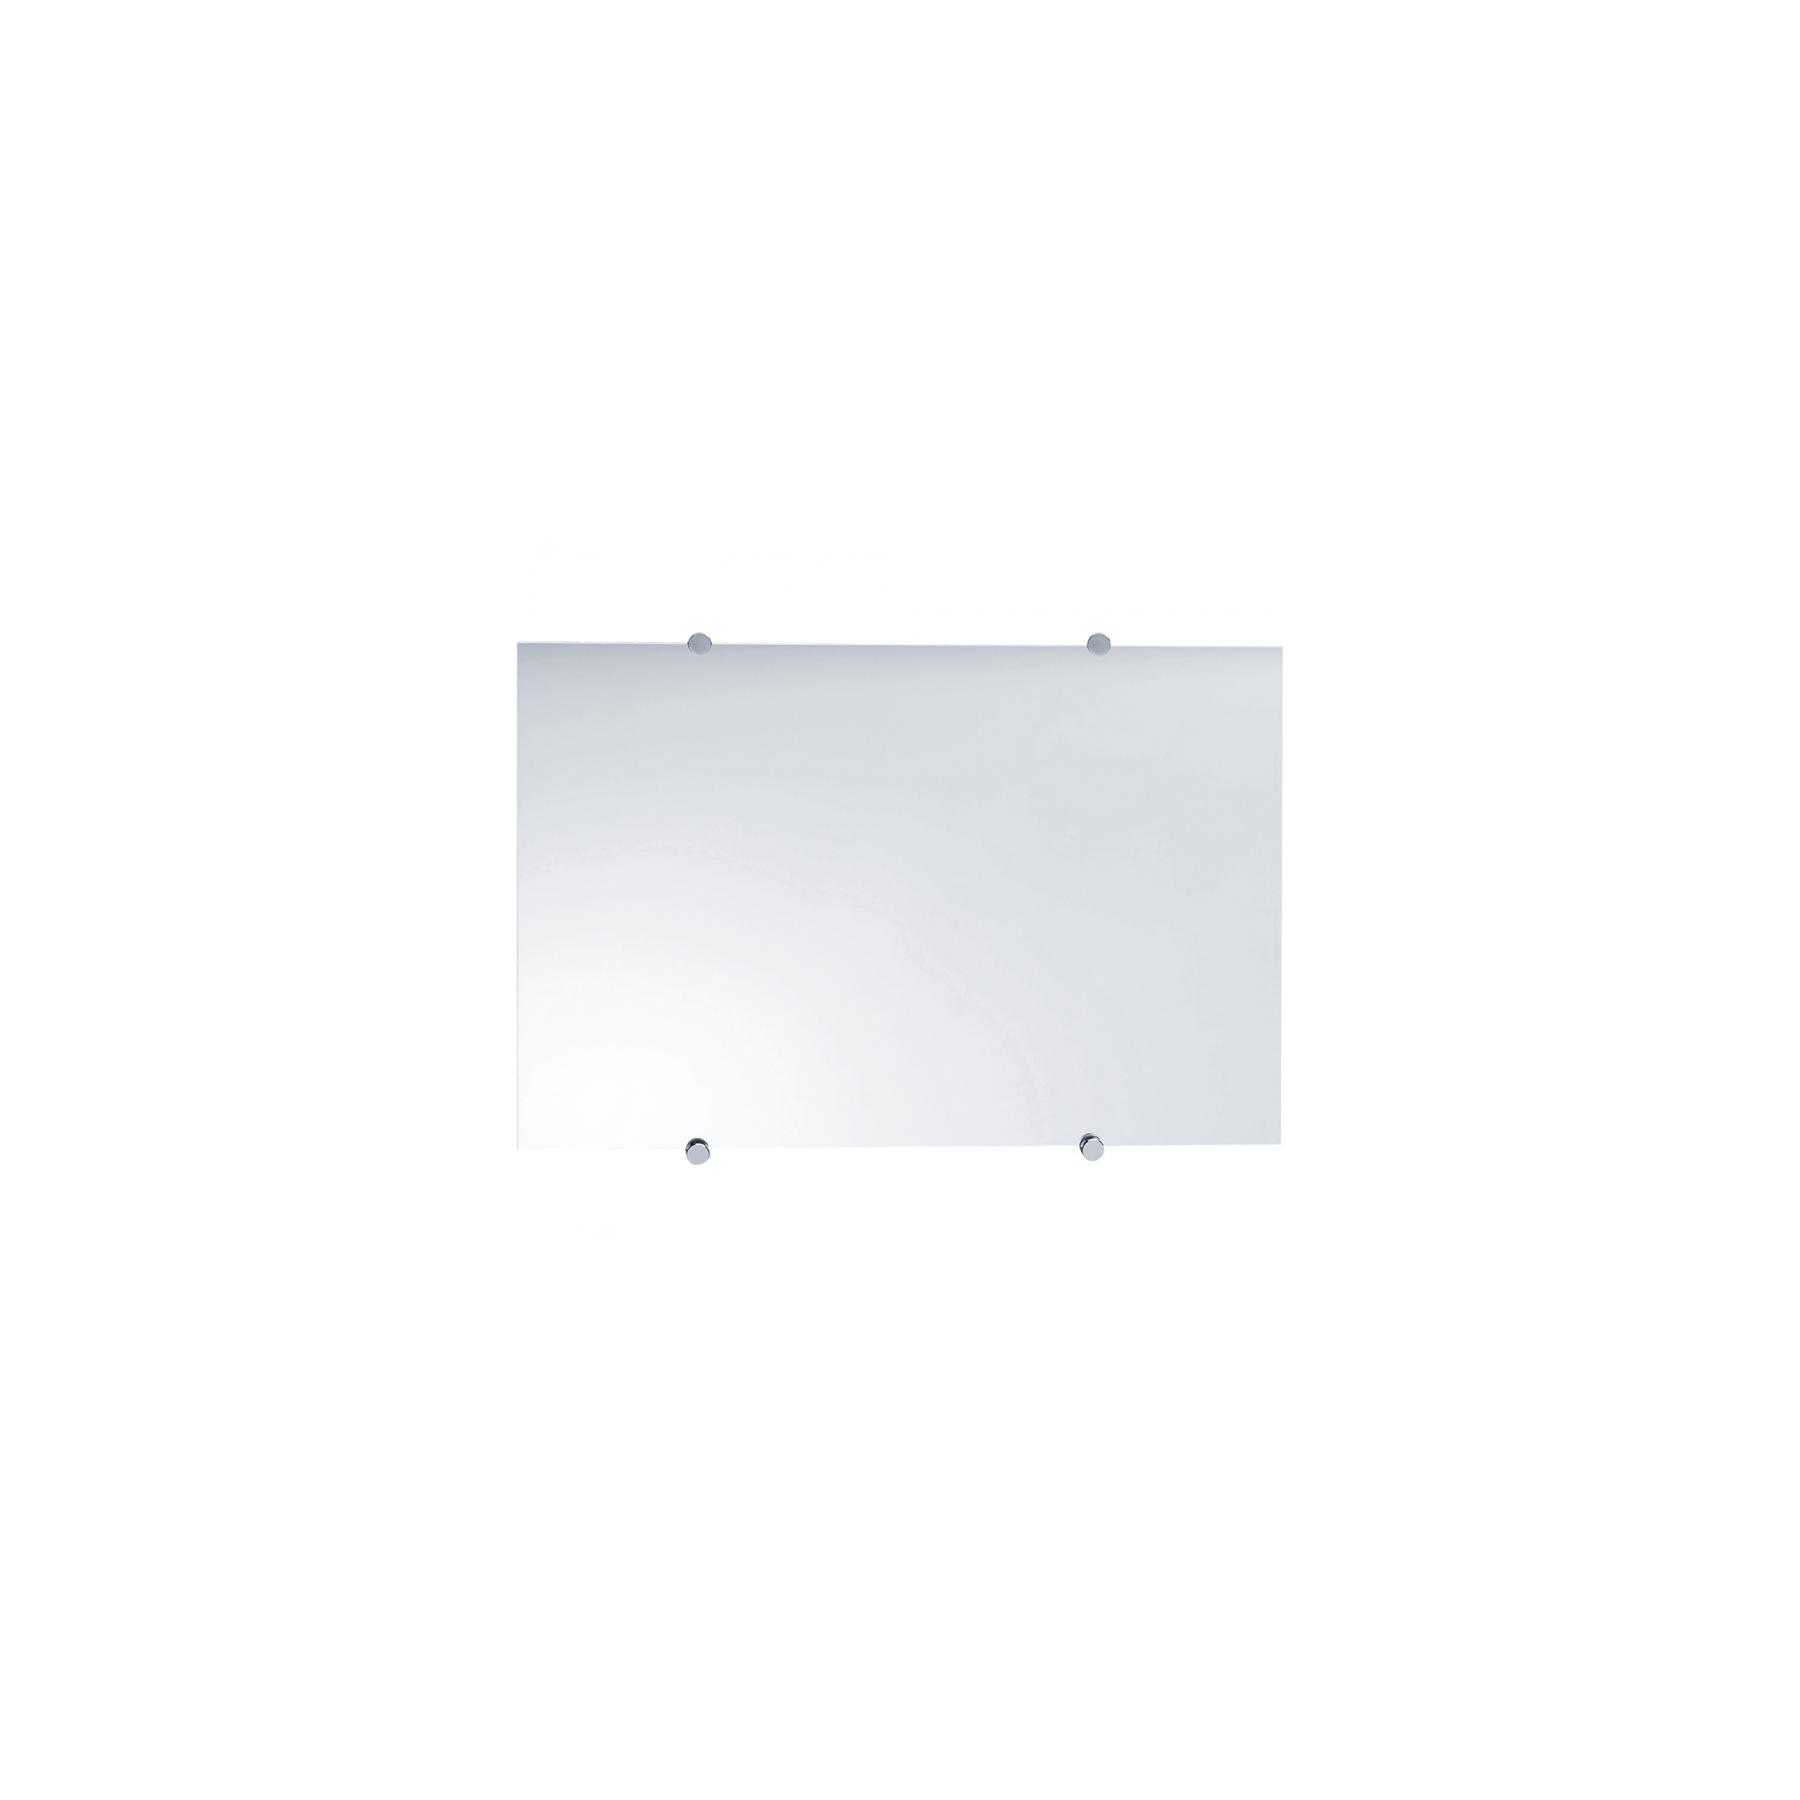 Miroir rectangulaire Gamme PRO PELLET 60x40cm épaisseur 4mm Colisage par 5 pièces